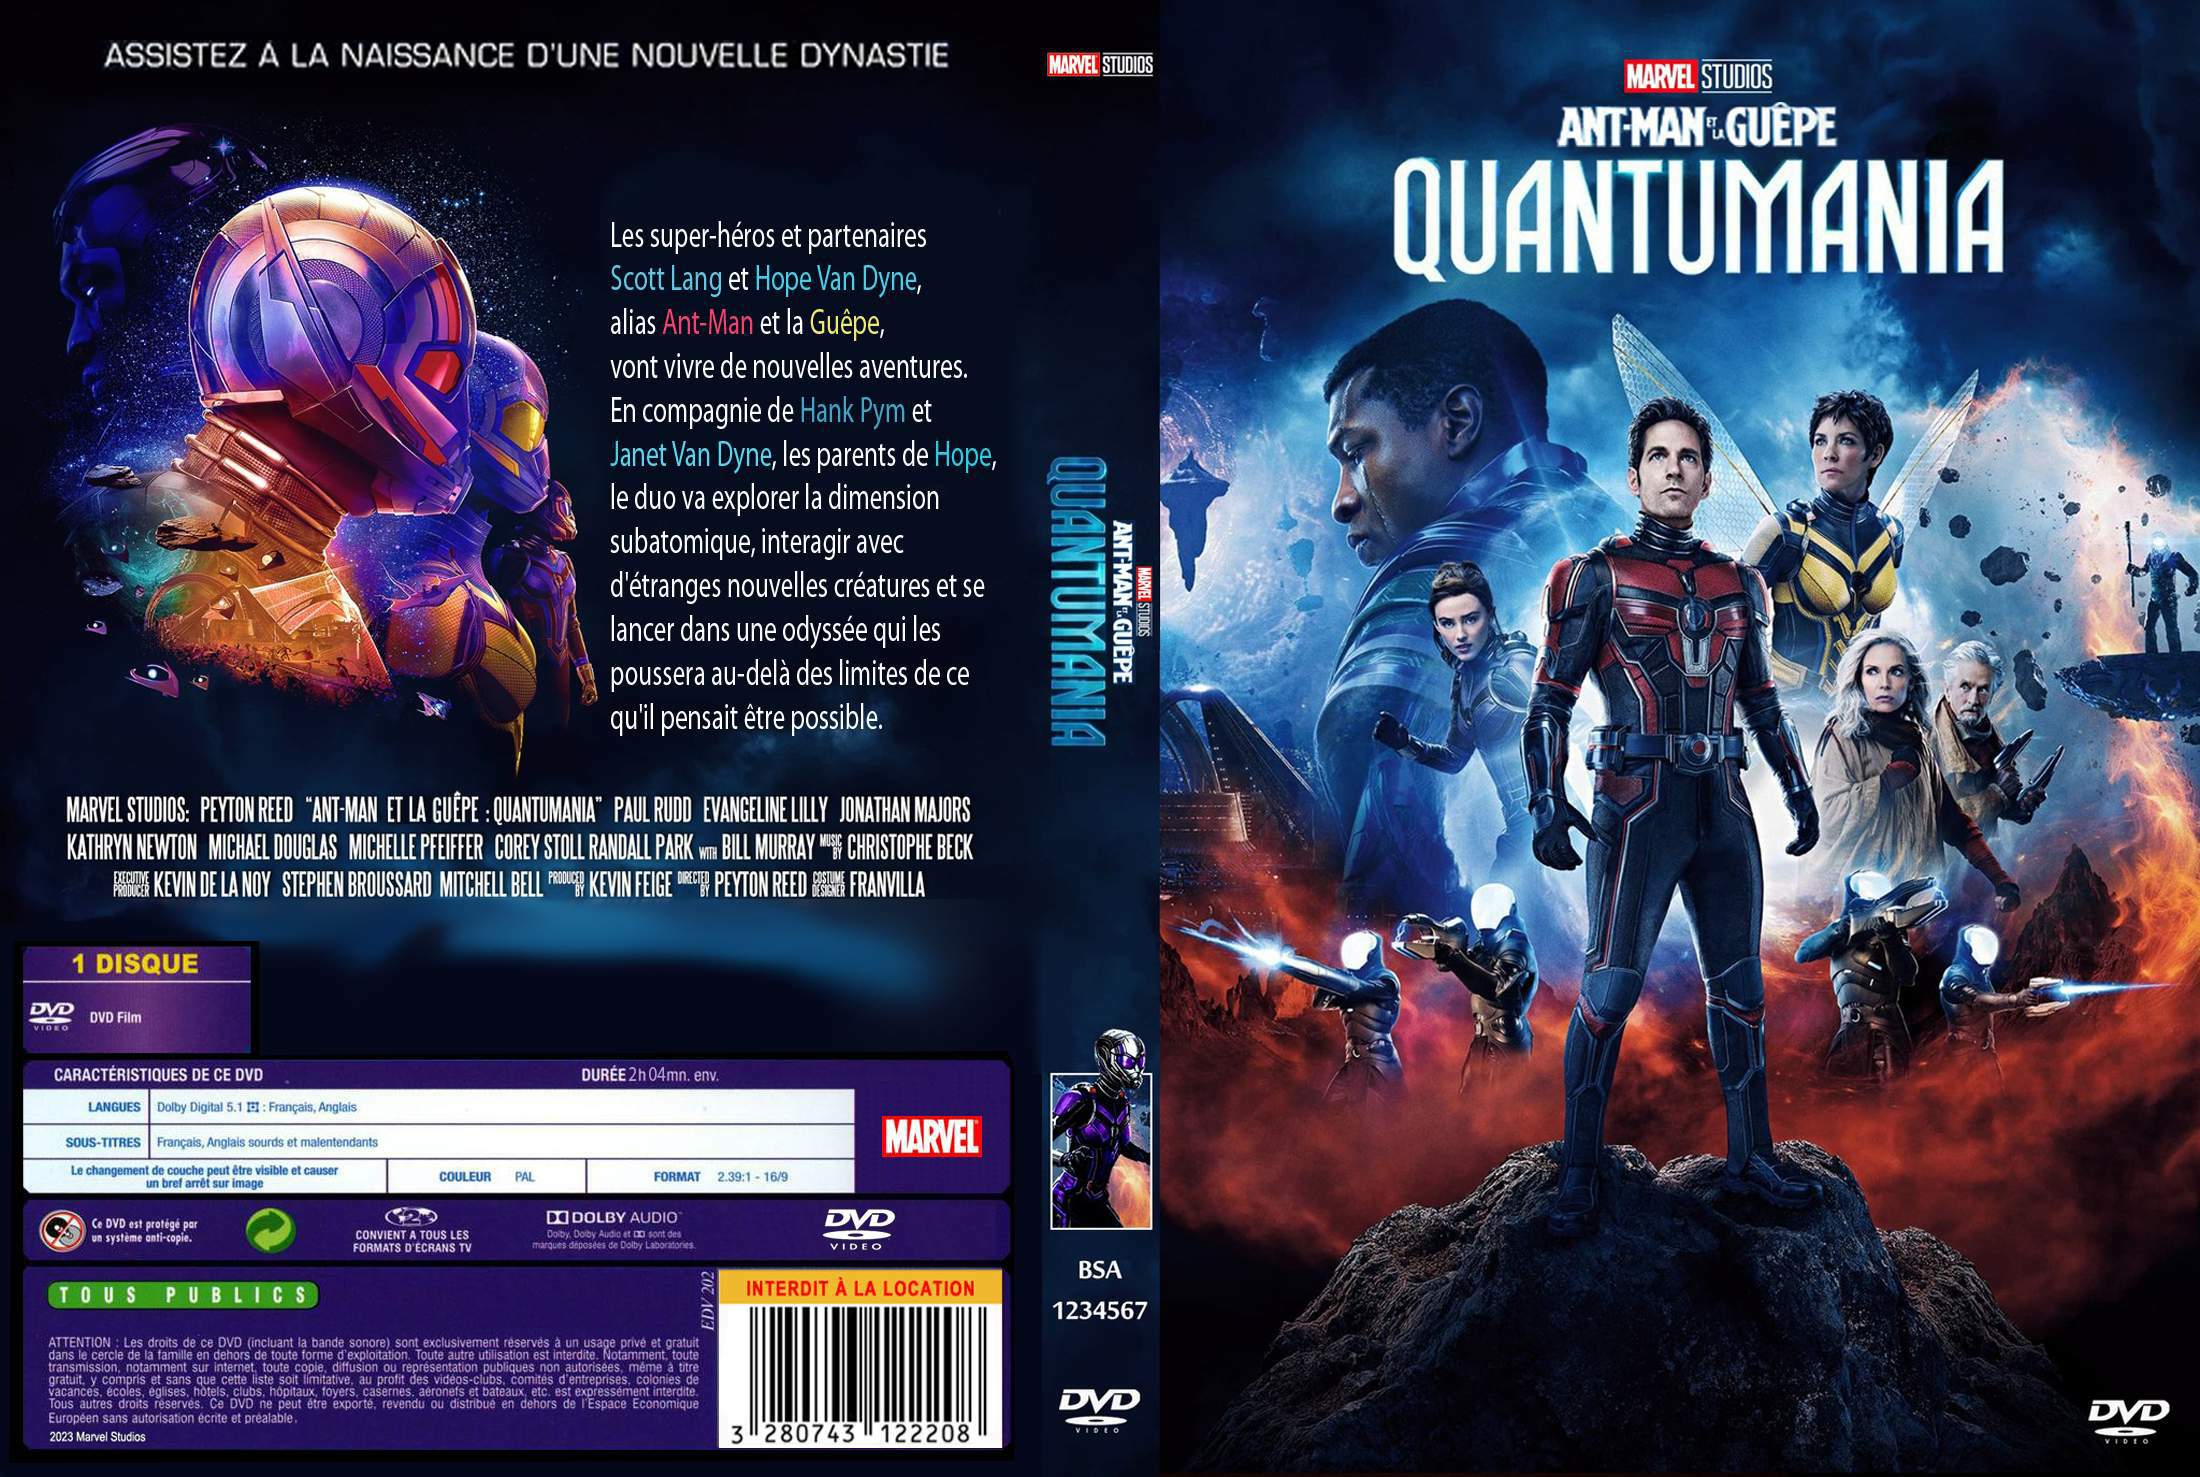 Jaquette DVD Ant-man et la gupe Quantumania custom